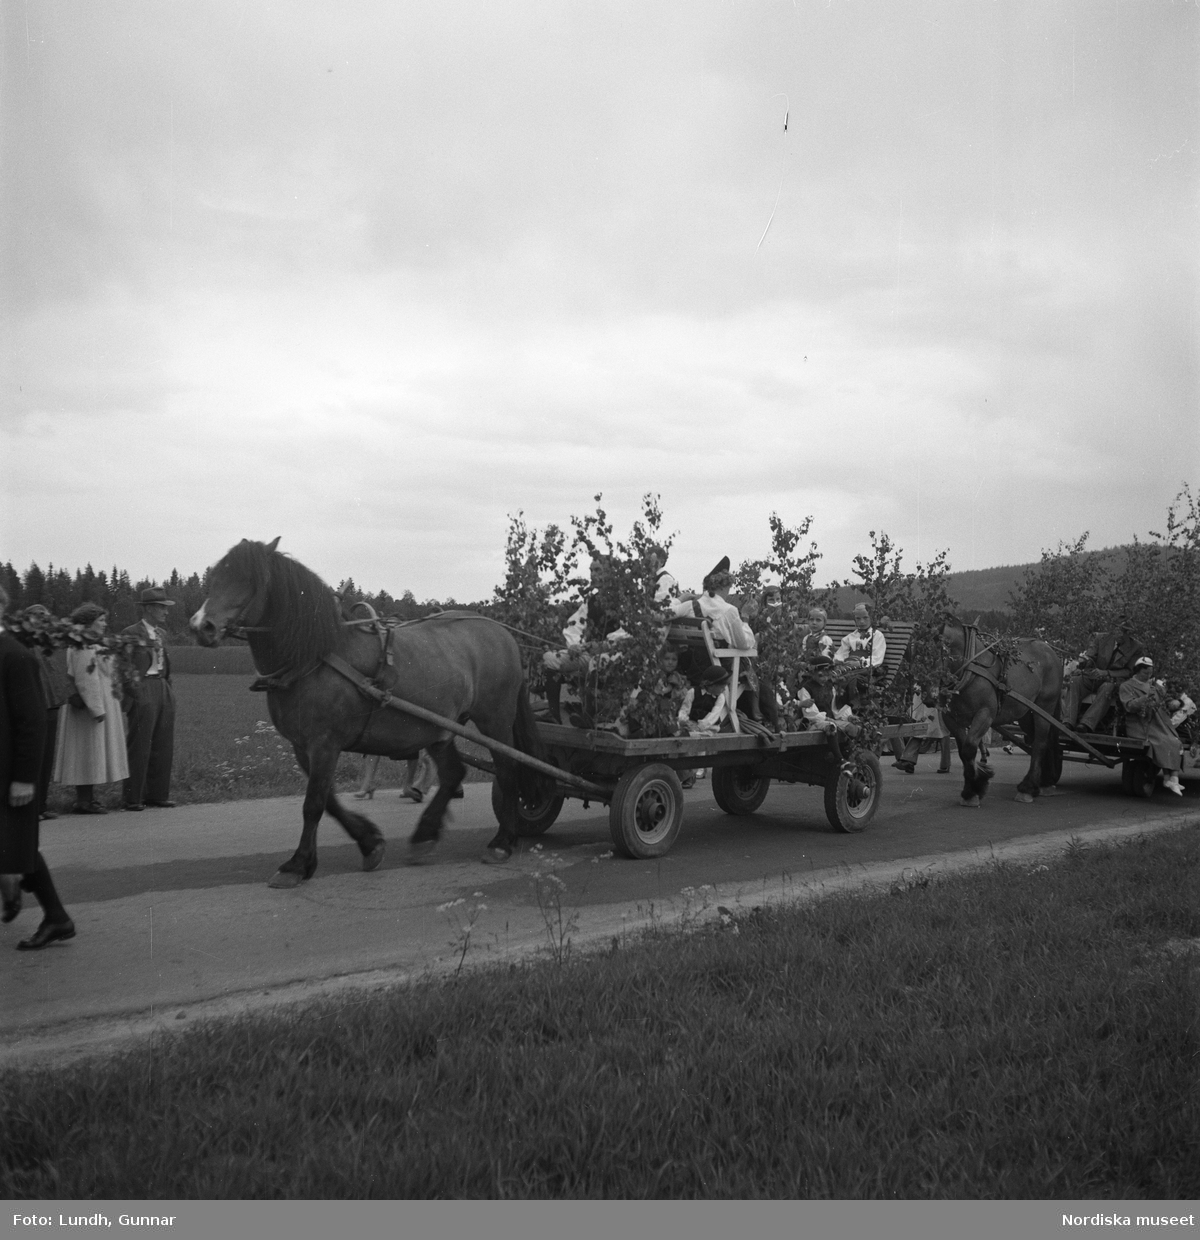 Motiv: (ingen anteckning) ;
Porträtt av en kvinna i folkdräkt och en man som sitter på marken, män och kvinnor i folkdräkt går i ett proccesionståg med flaggor och kvinnor bär en lövad girlang, människor åker på en hästdragen vagn, en folksamling går i ett processionståg.